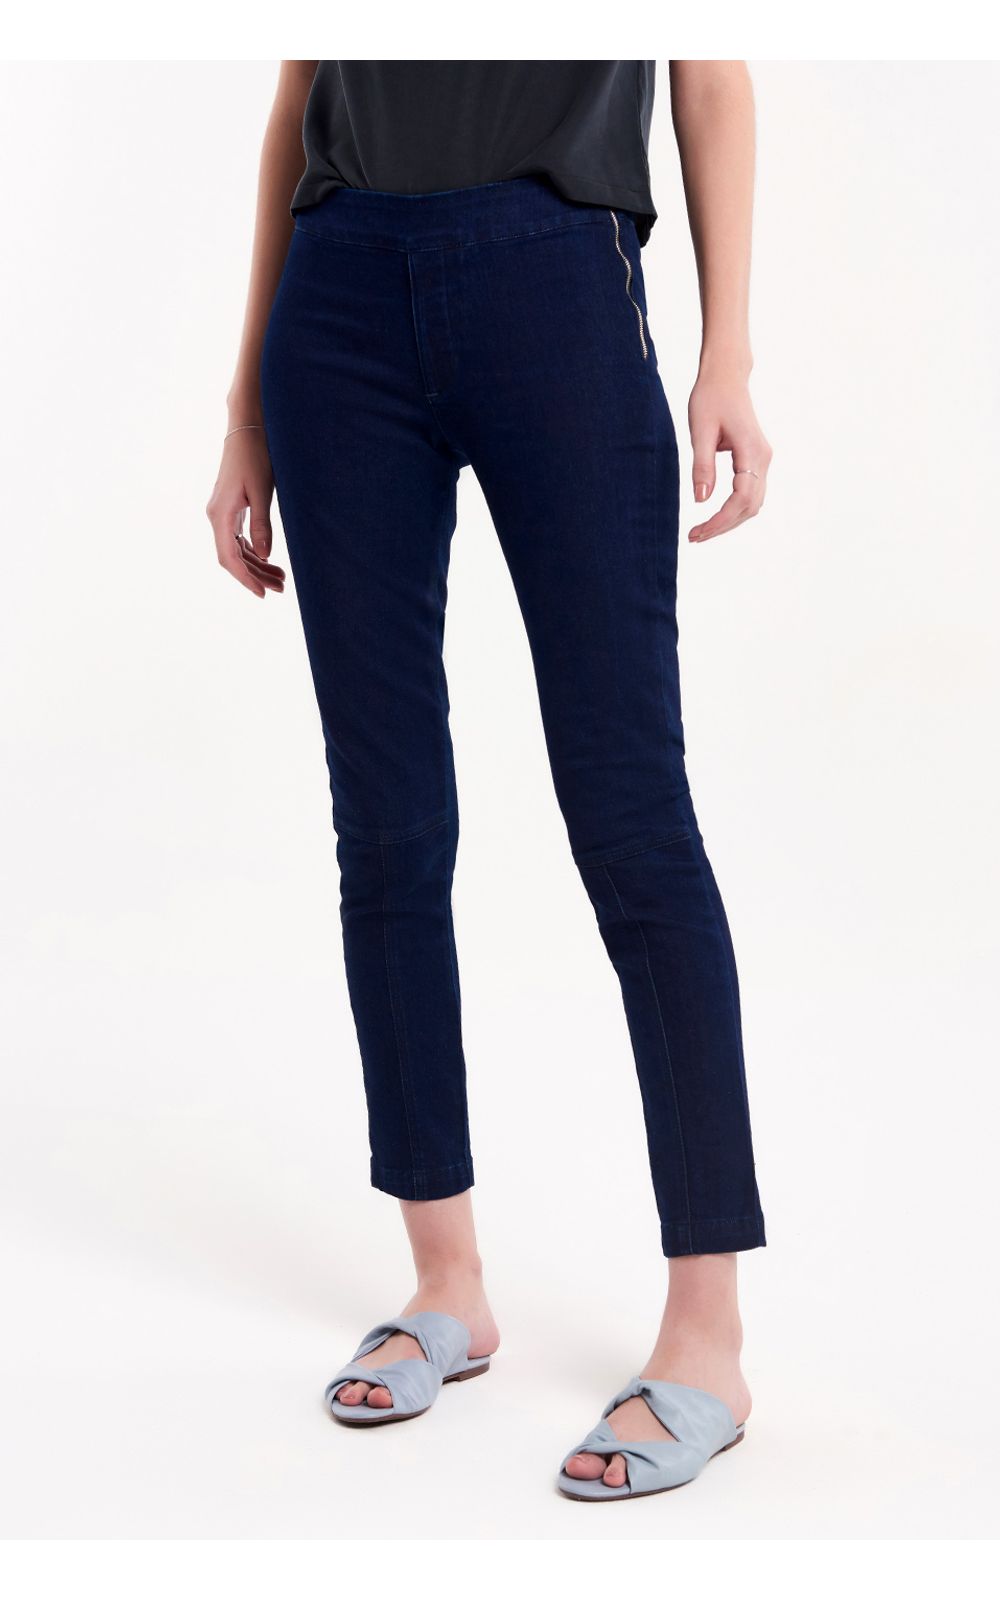 Foto 2 - Calça Jeans Skinny Piodão